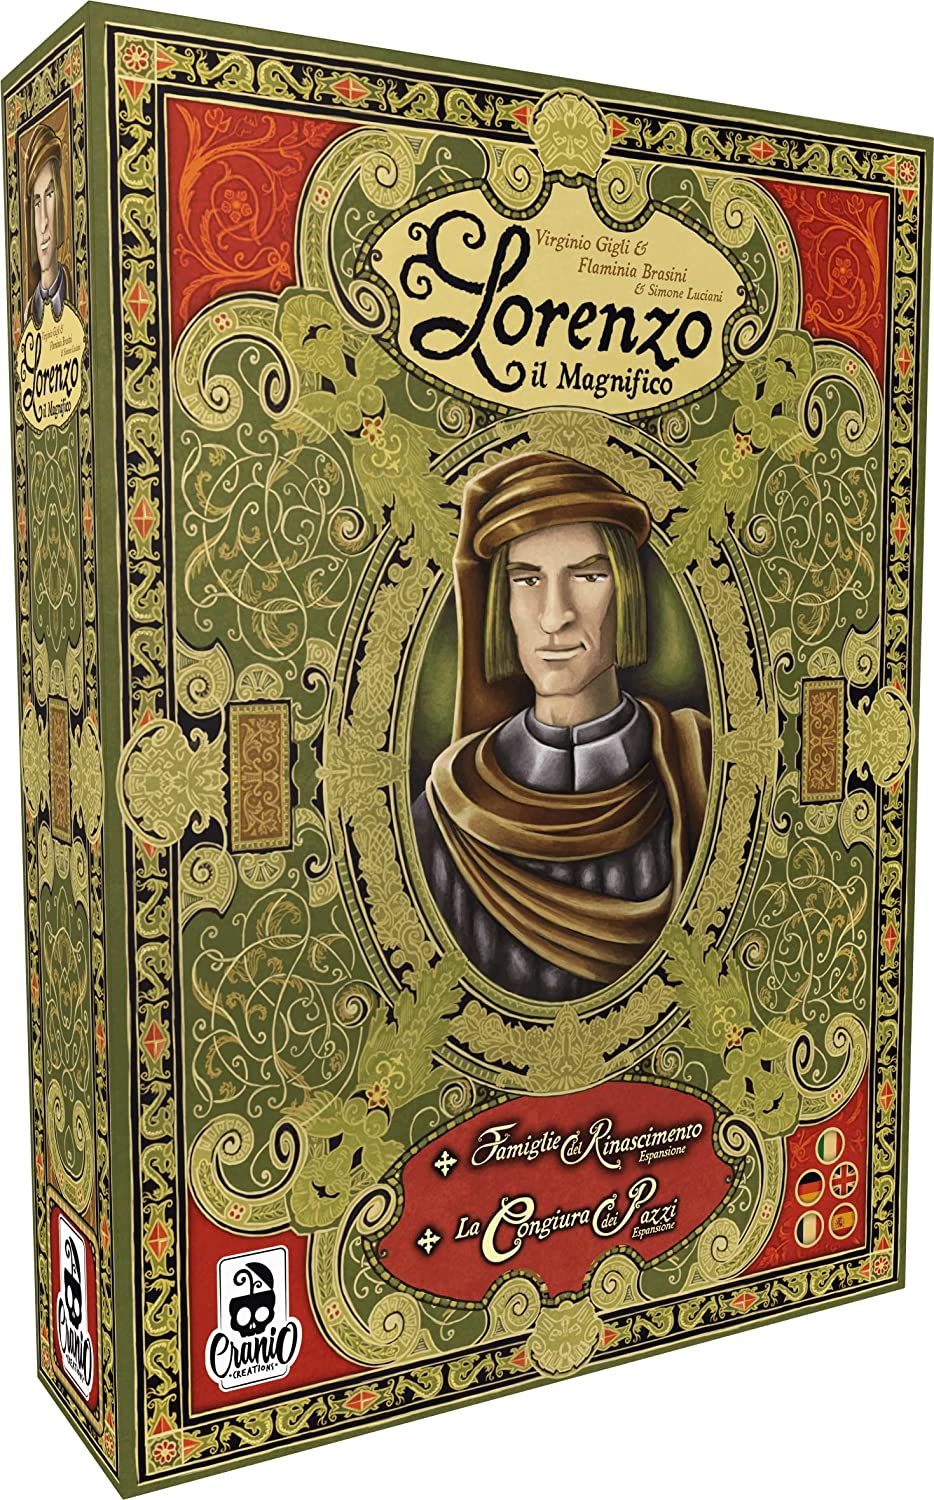 Lorenzo der Prächtige: Deluxe Edition